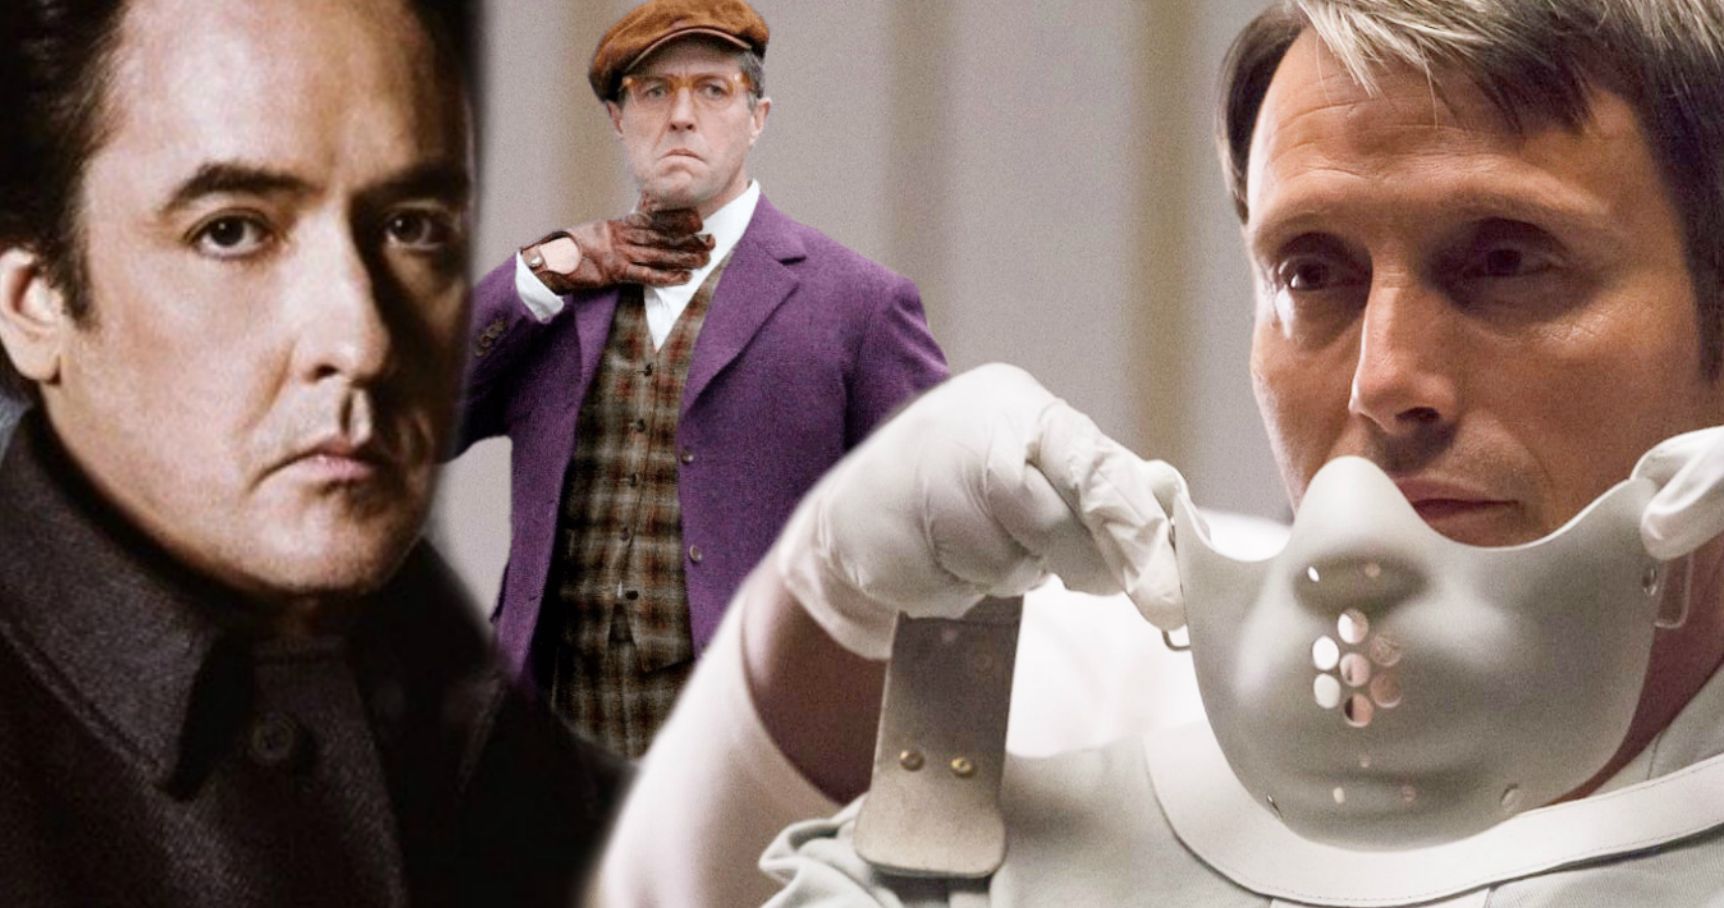 Hannibal Showrunner Reveals NBC Wanted John Cusack or Hugh Grant Over Mads Mikkelsen